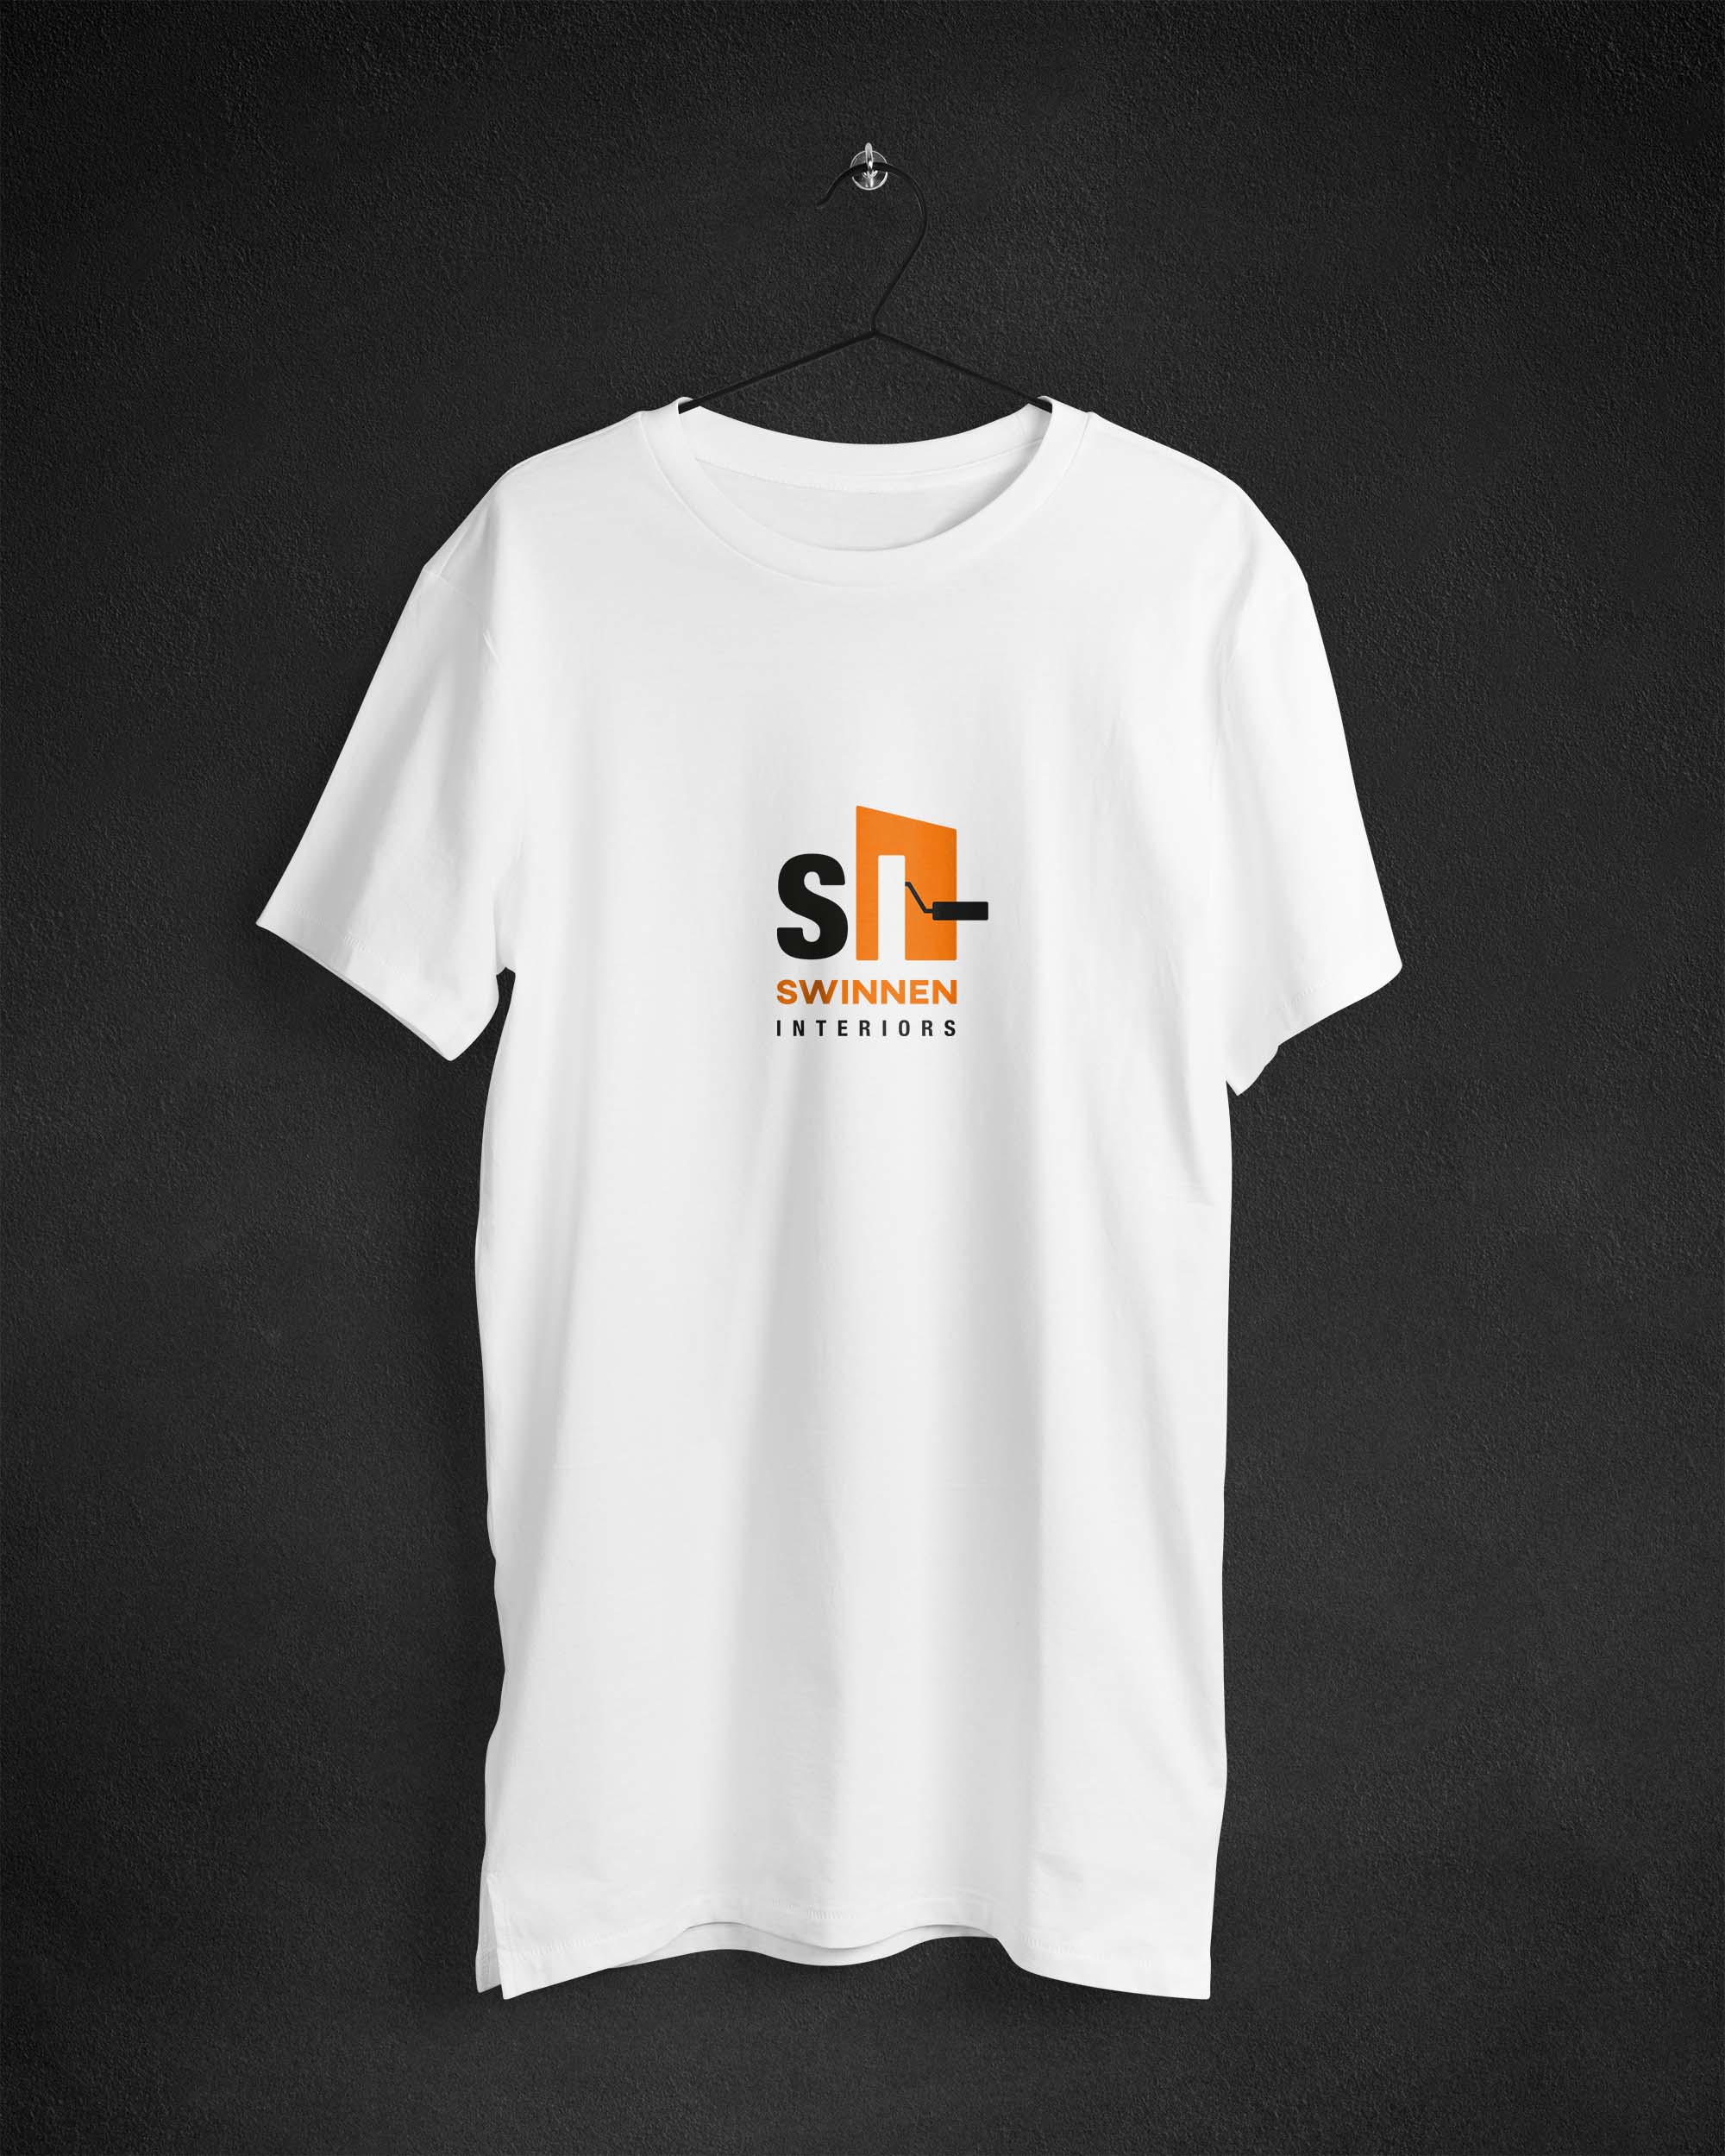 t-shirt design logo Swinnen Interiors